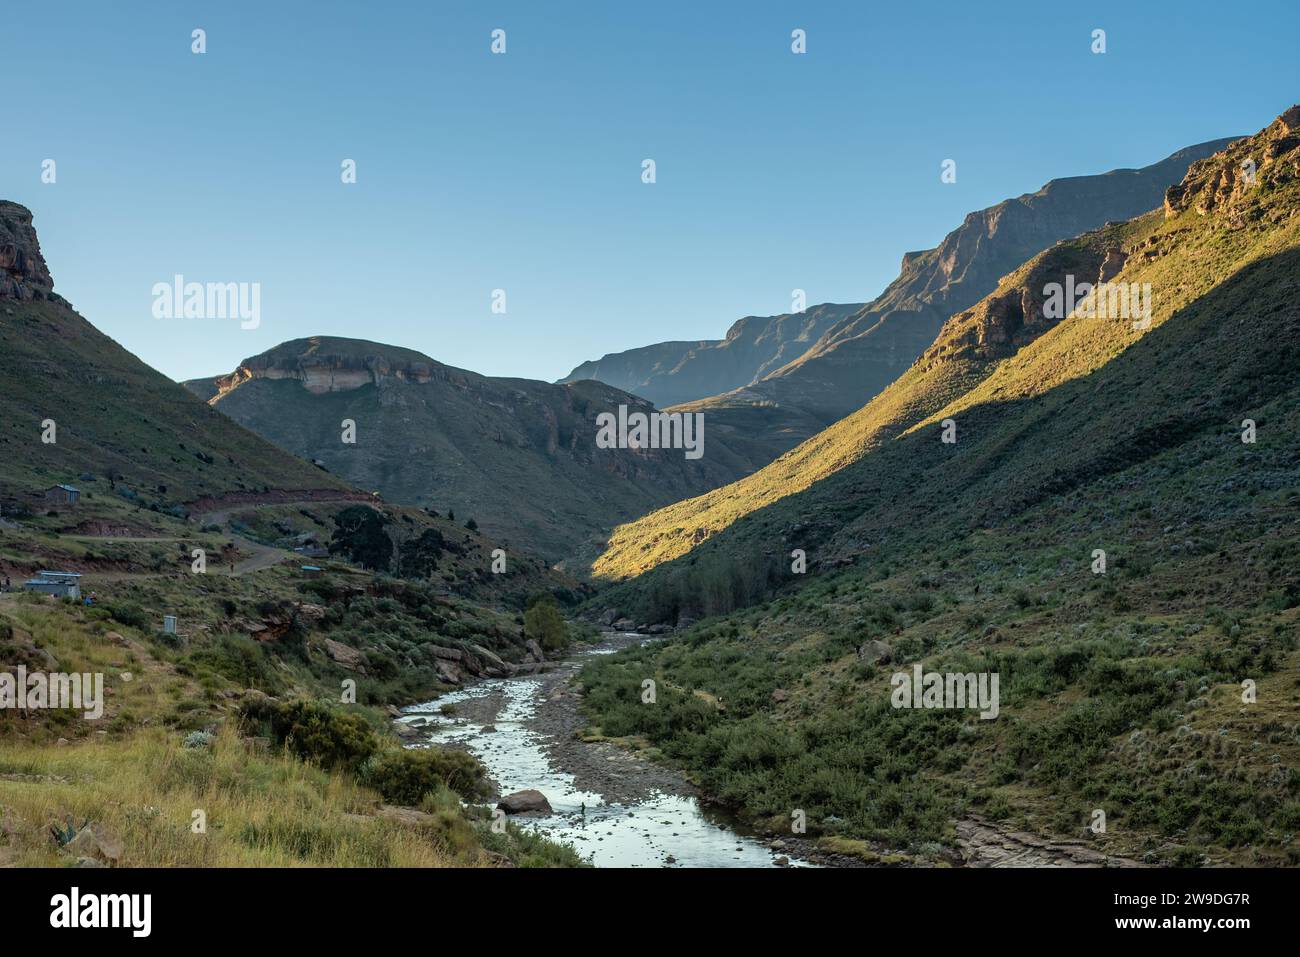 Une rivière serpente à travers les montagnes verdoyantes dans une partie reculée du Lesotho Banque D'Images